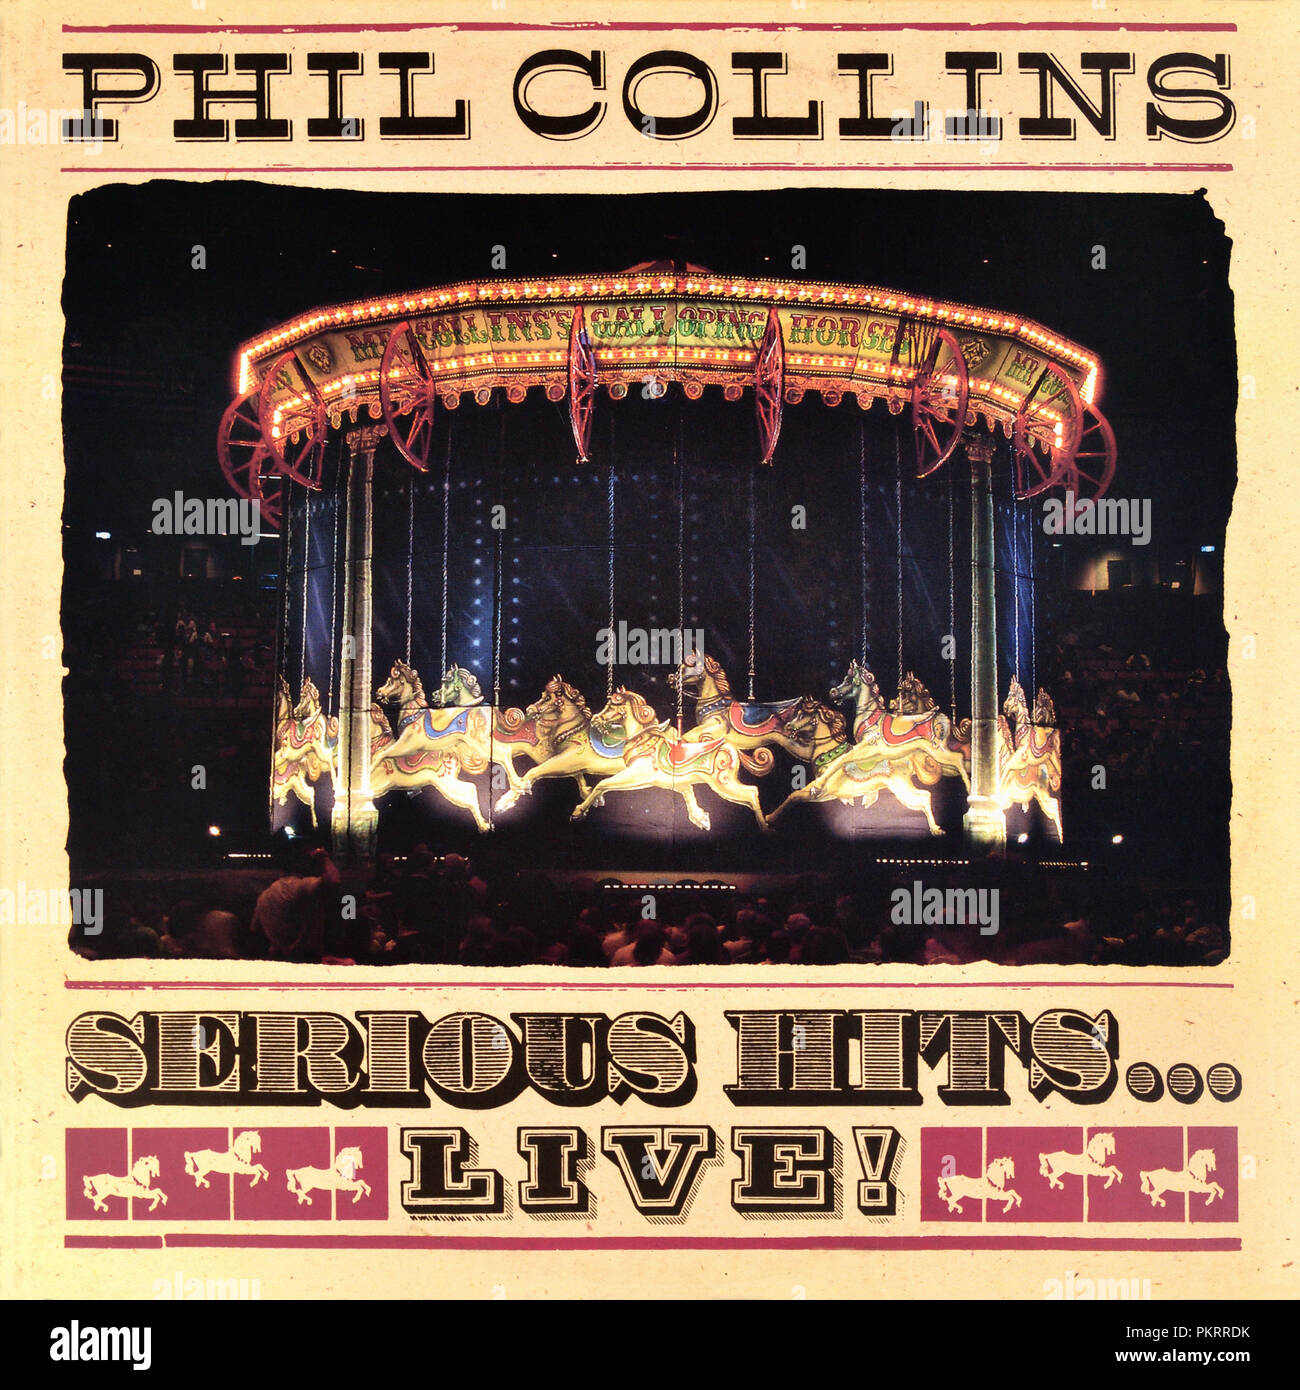 Phil Collins - copertina originale dell'album in vinile - Serious Hits...Live! - 1990 Foto Stock